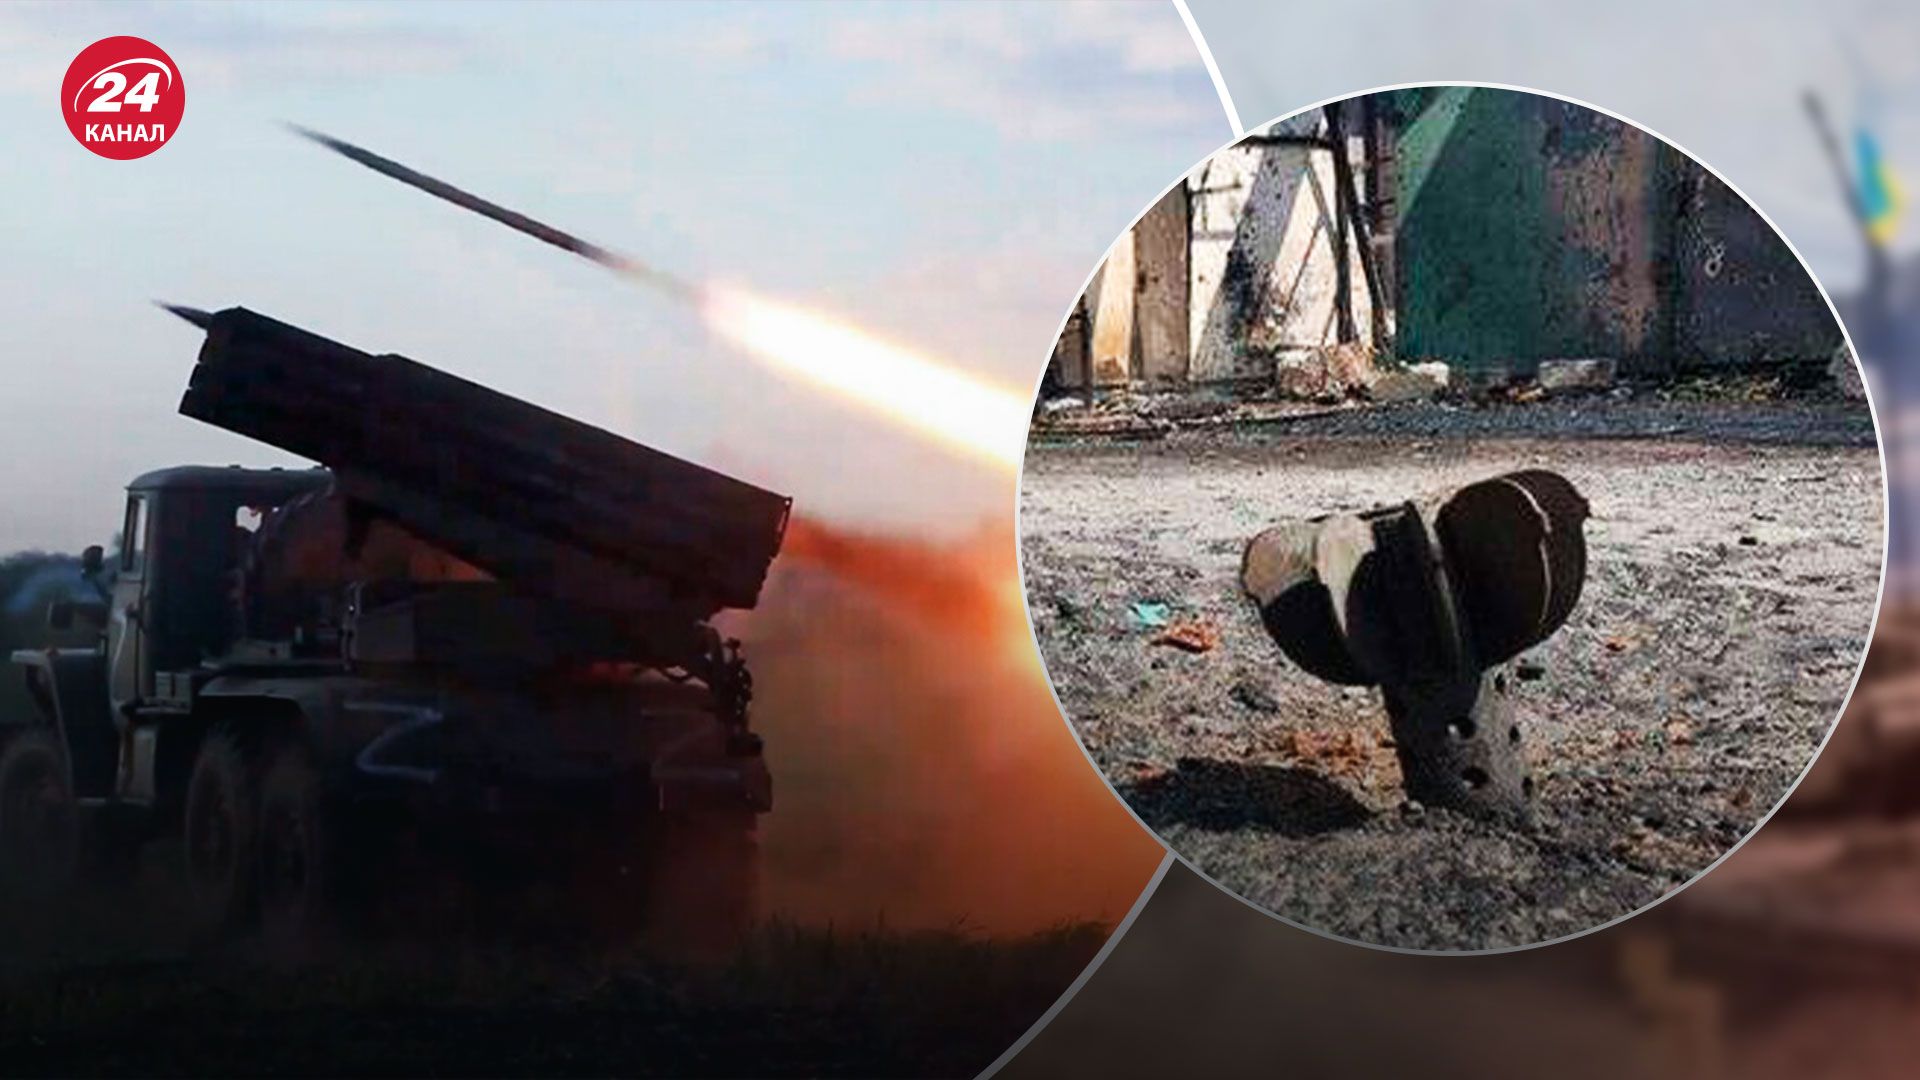 Ситуация в Харьковской области - Россия усилила обстрелы области - Новости Украины - 24 Канал